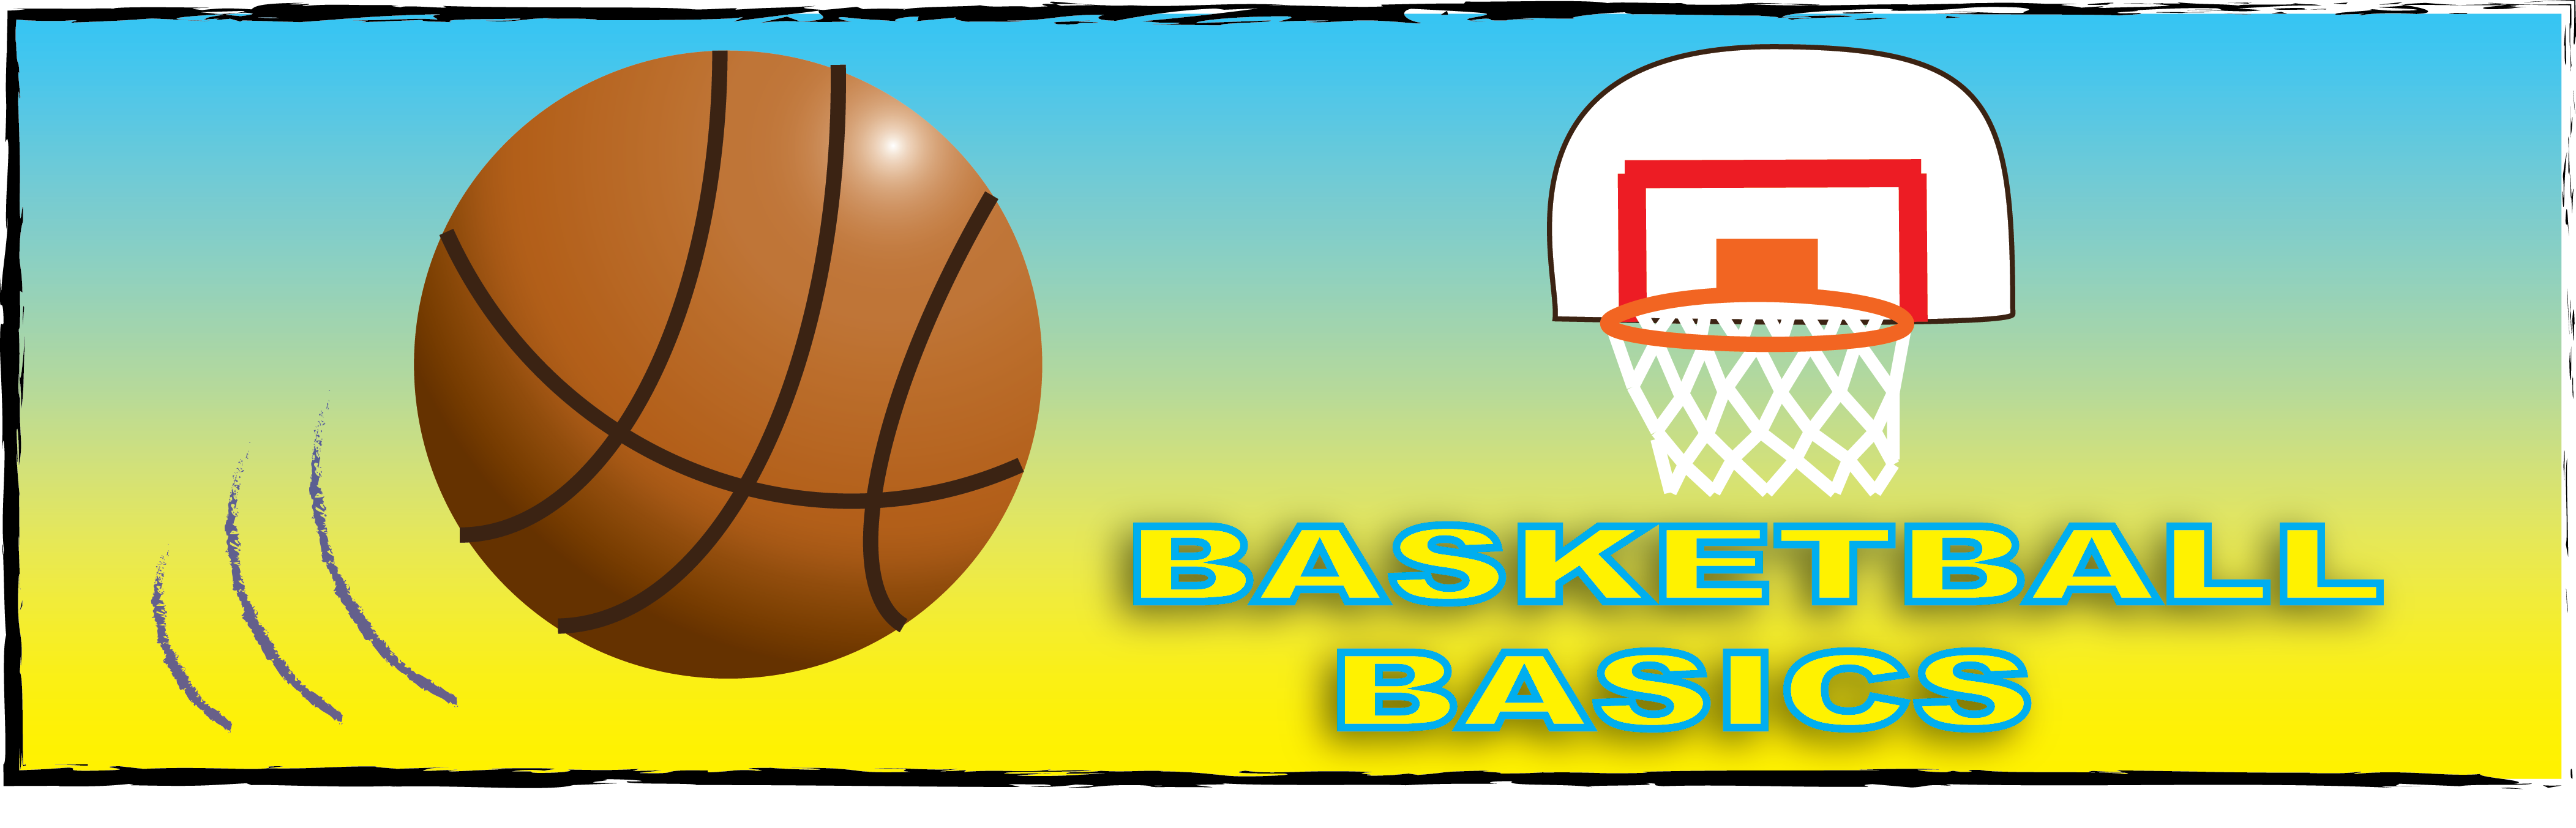 Basketball Basics Banner